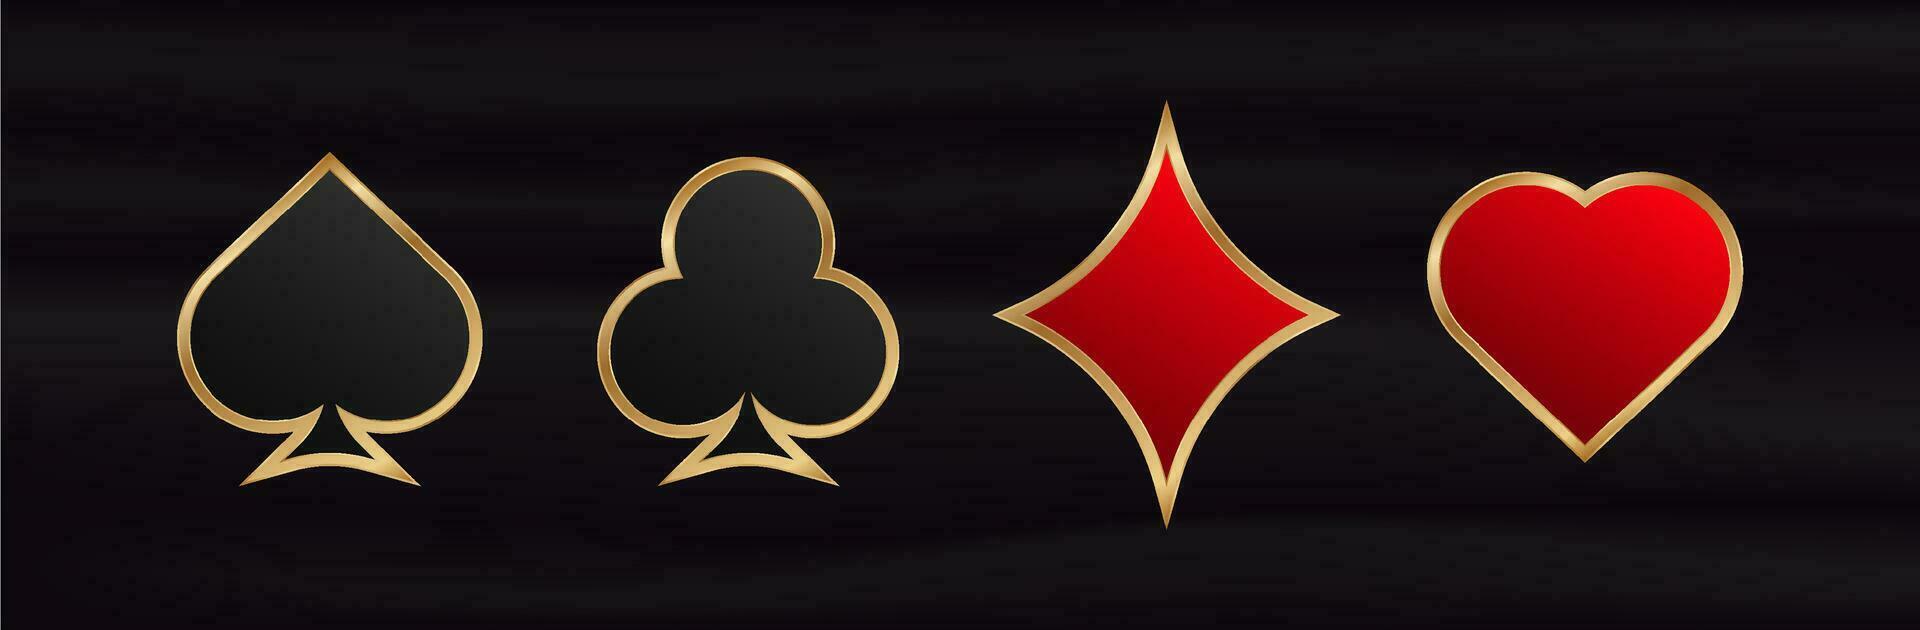 Glücksspiel Karte Anzüge. Spiel rot Symbol von Glück im Poker und schwarz erfolgreich Spiel im Kasino mit Blackjack und Vektor Wetten